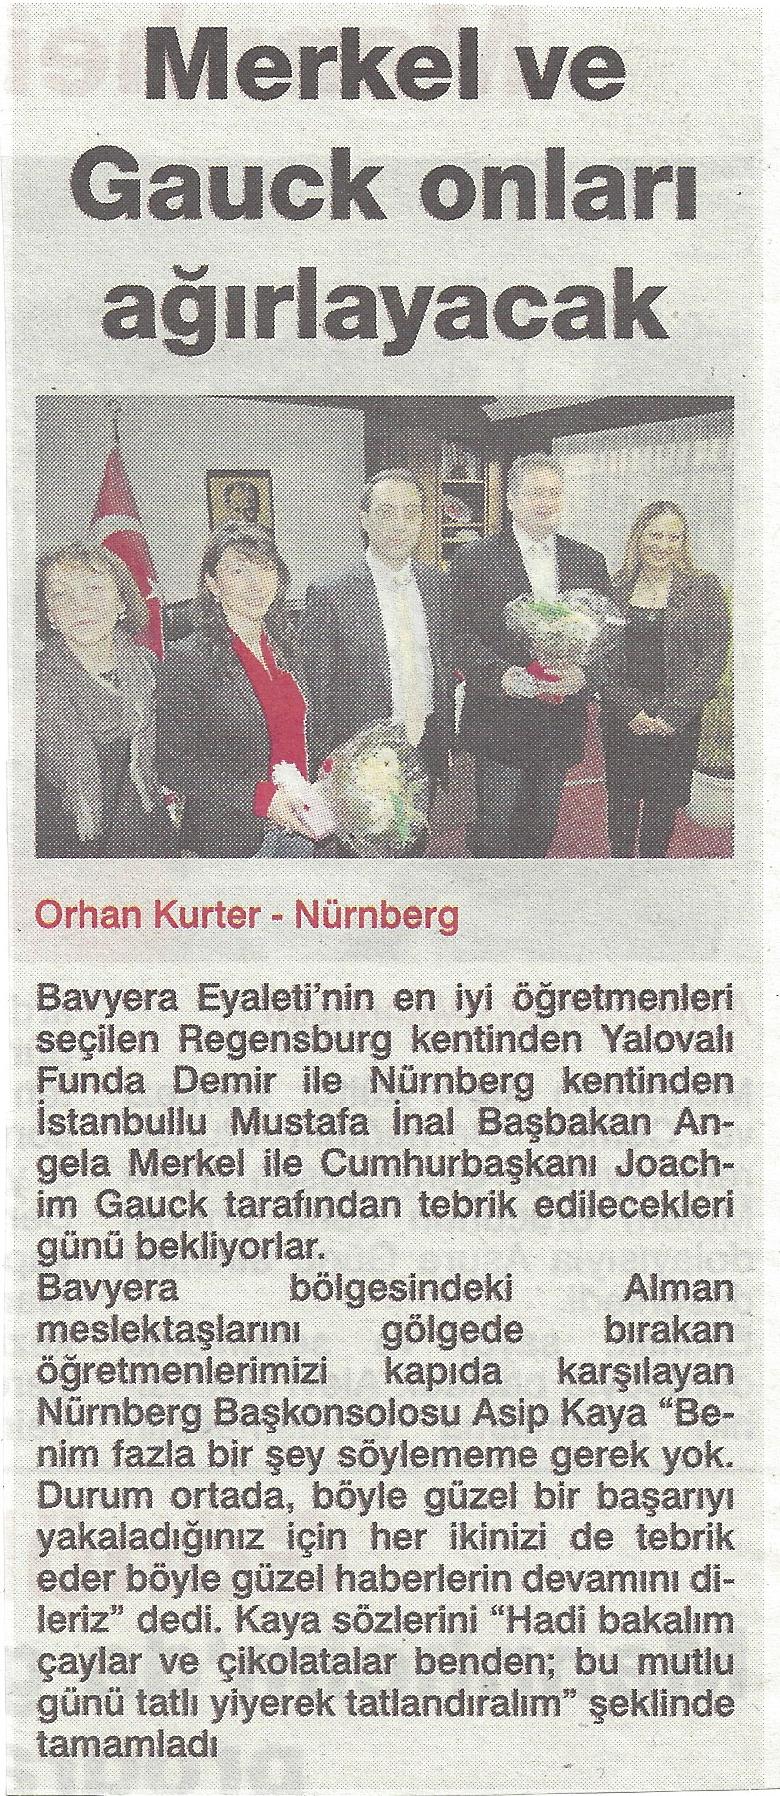 Zeitung Yeni Posta| 06.12.2013|Mustafa Inal| Lehrer mit Migrationshintergrund